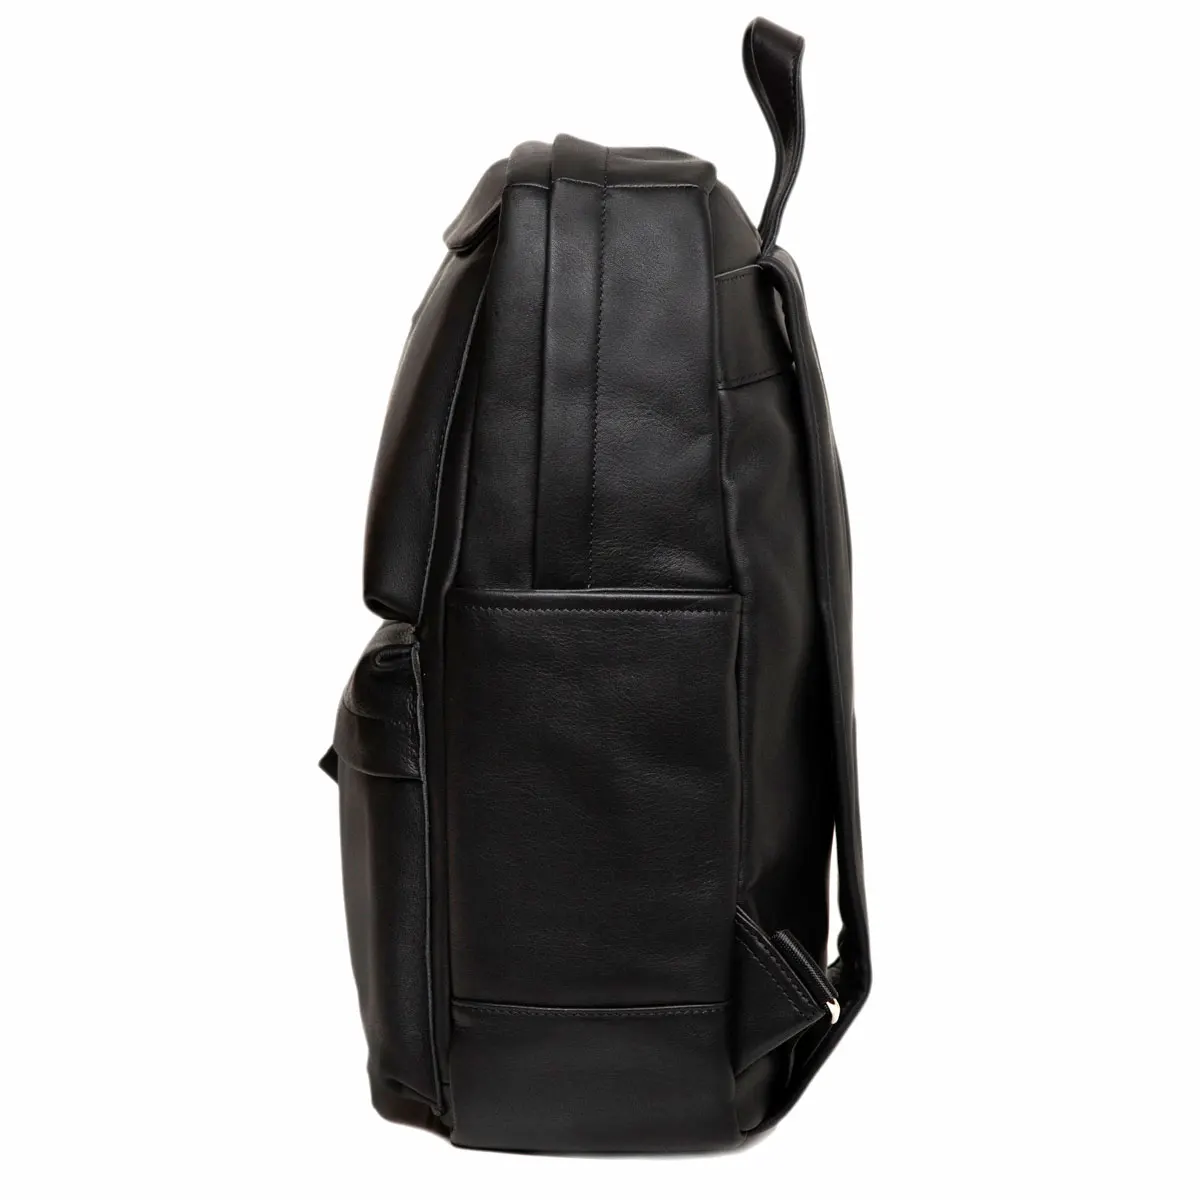 Men's backpack, leather backpacks for men, shoulder bag for boys, over the shoulder bags